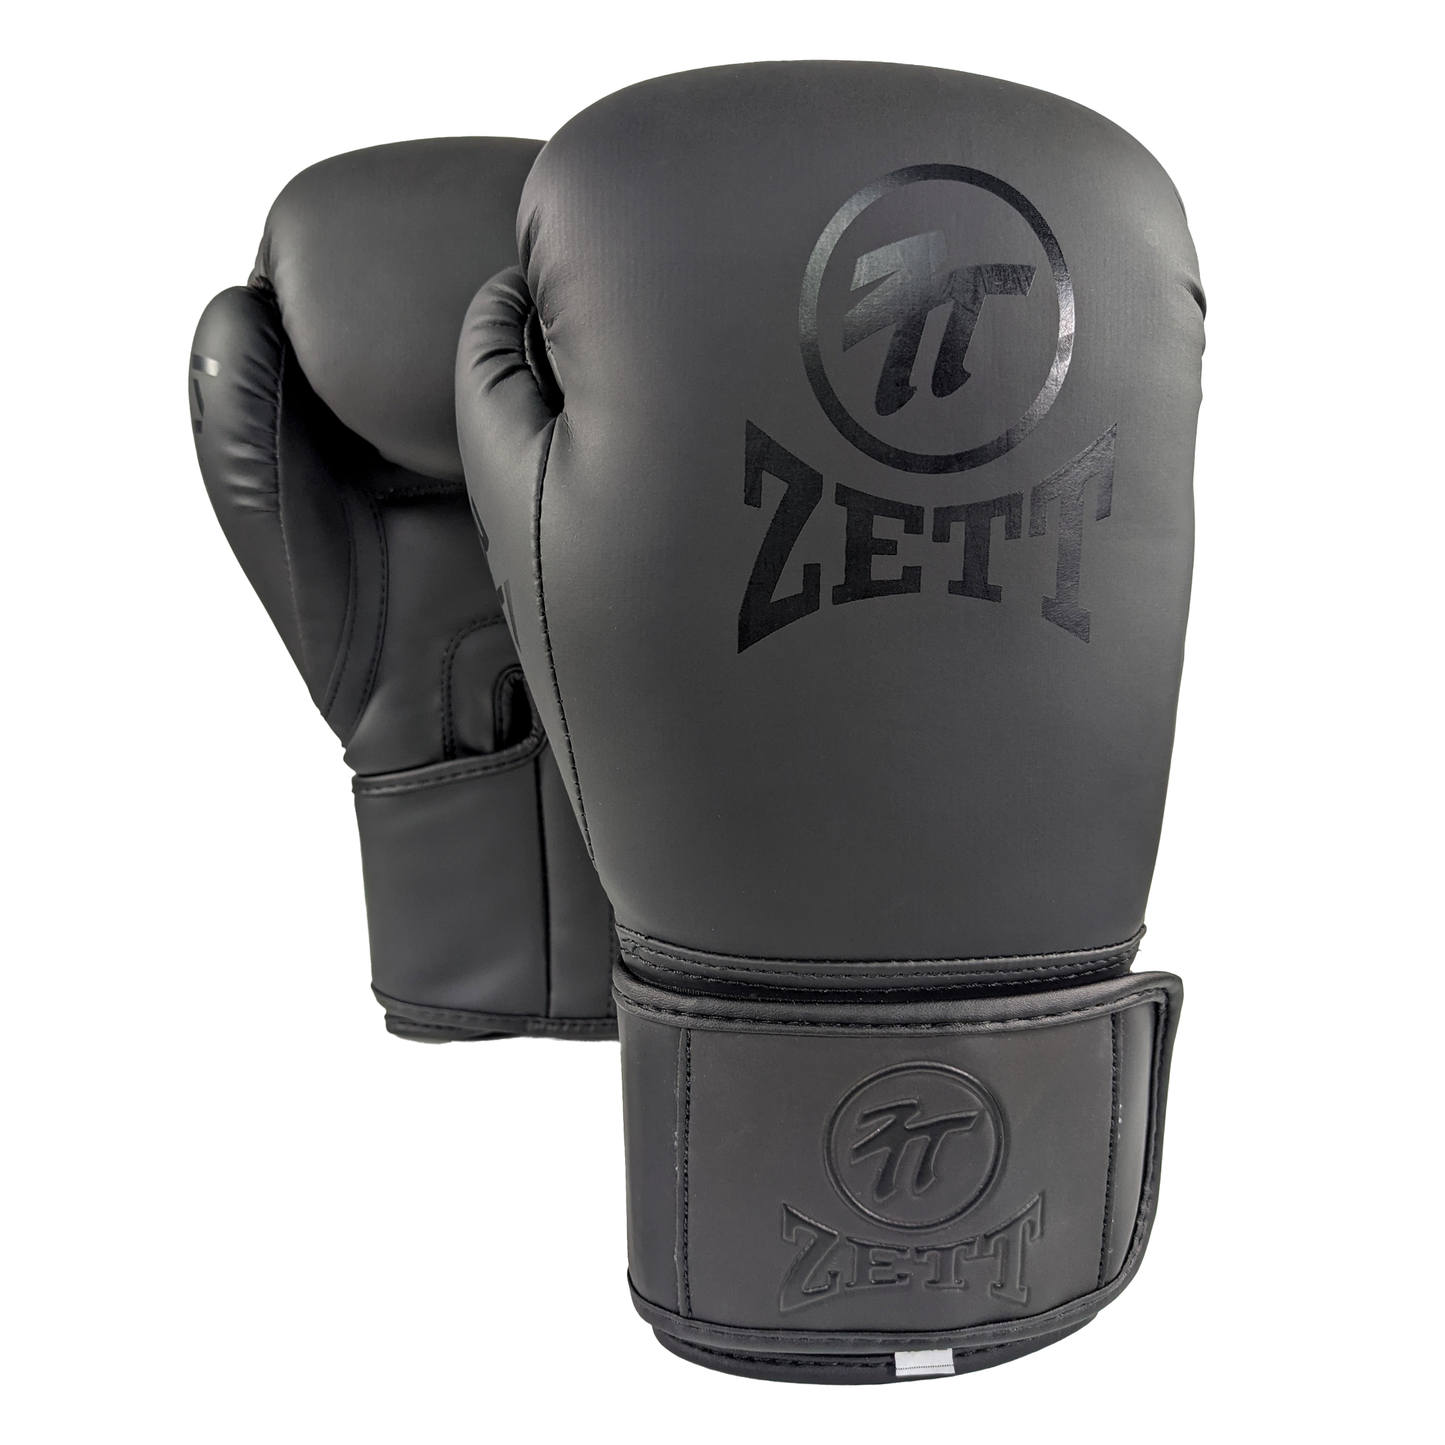 Zett Cobra Boxing Gloves